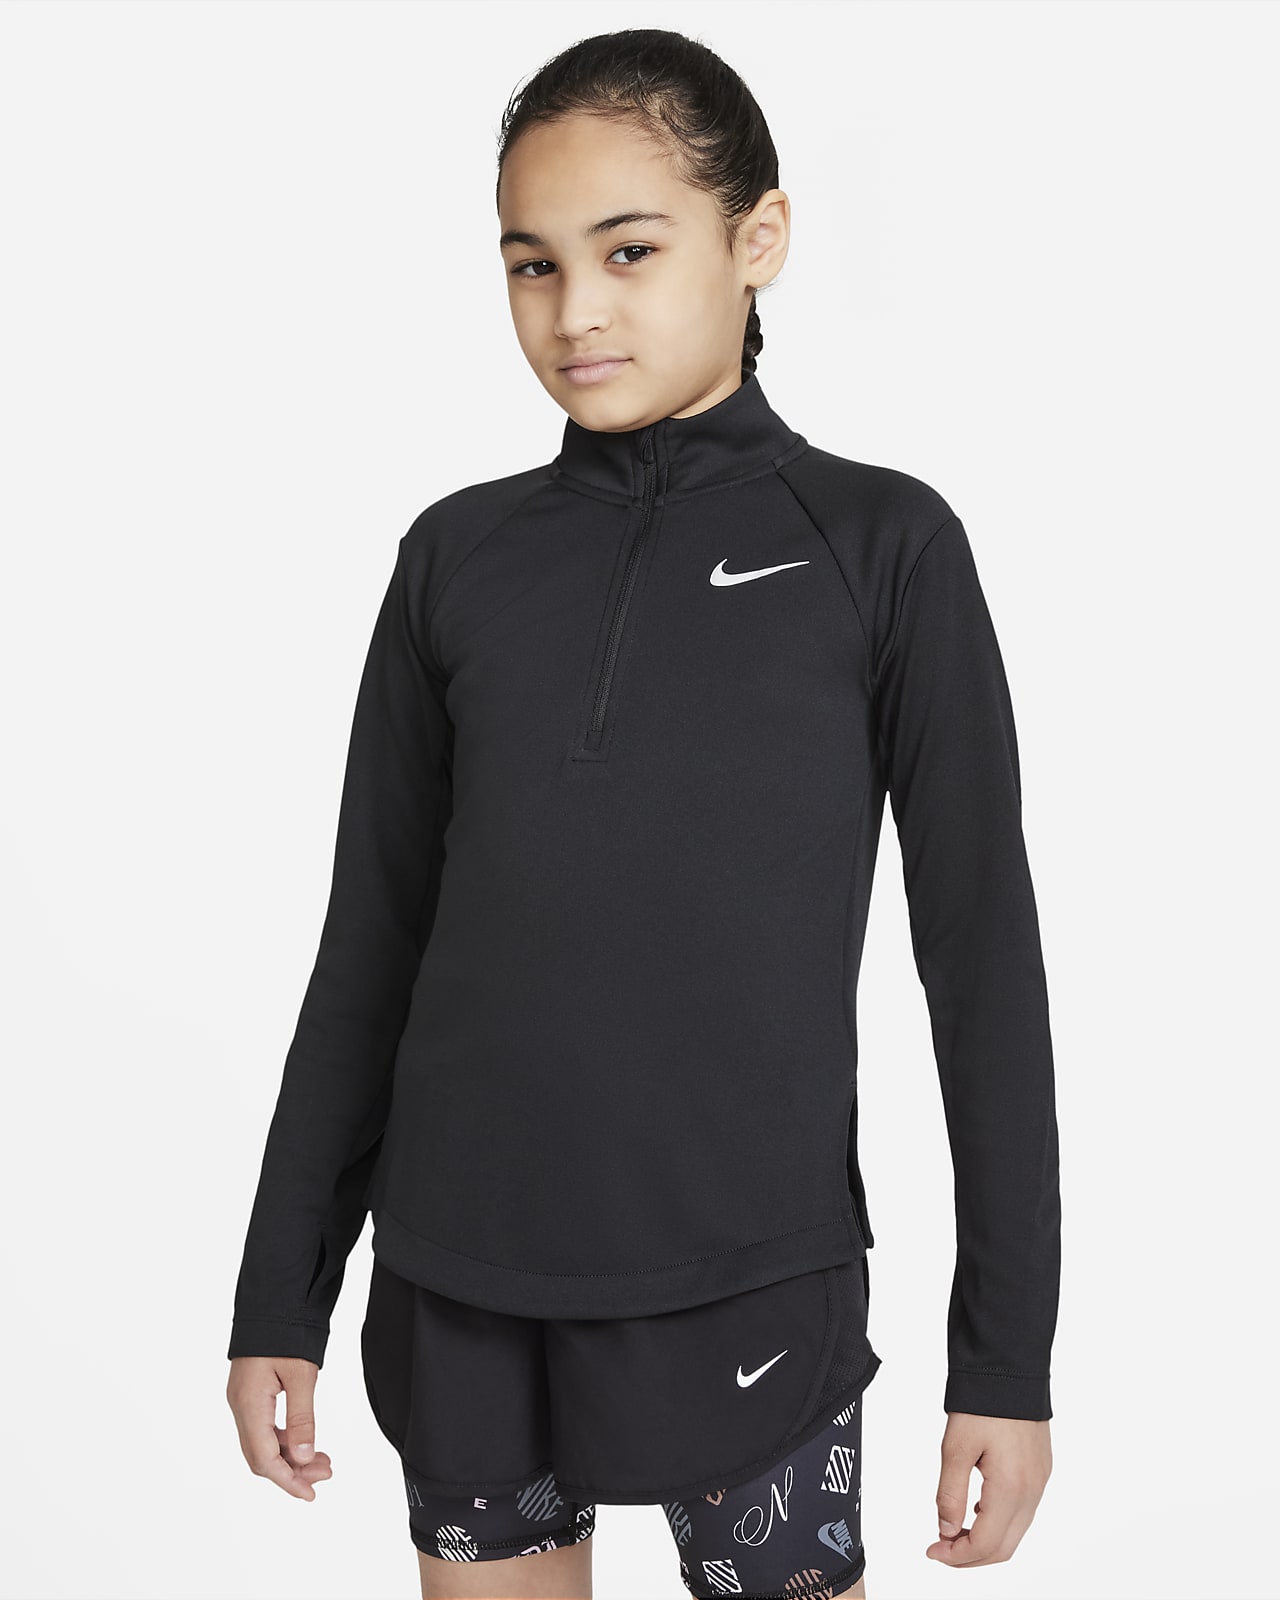 Nike Dri-FIT Langarm-Laufoberteil für ältere Kinder (Mädchen)